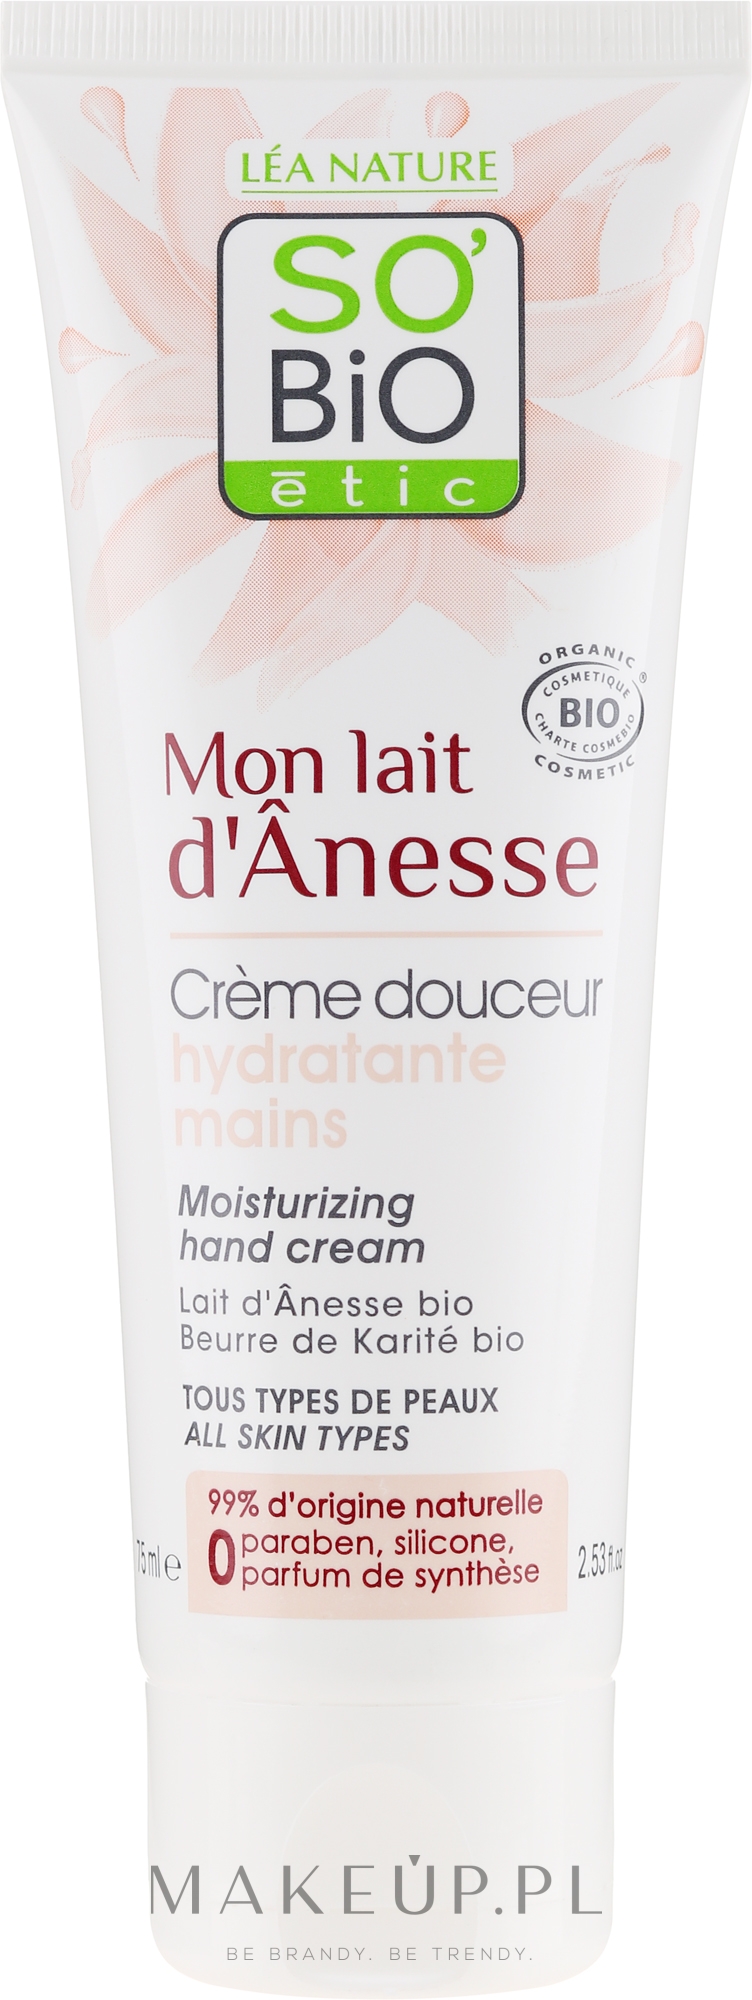 Nawilżający krem do rąk - So'Bio Etic Mon Lait d'Anesse Moisturizing Hand Cream — Zdjęcie 75 ml